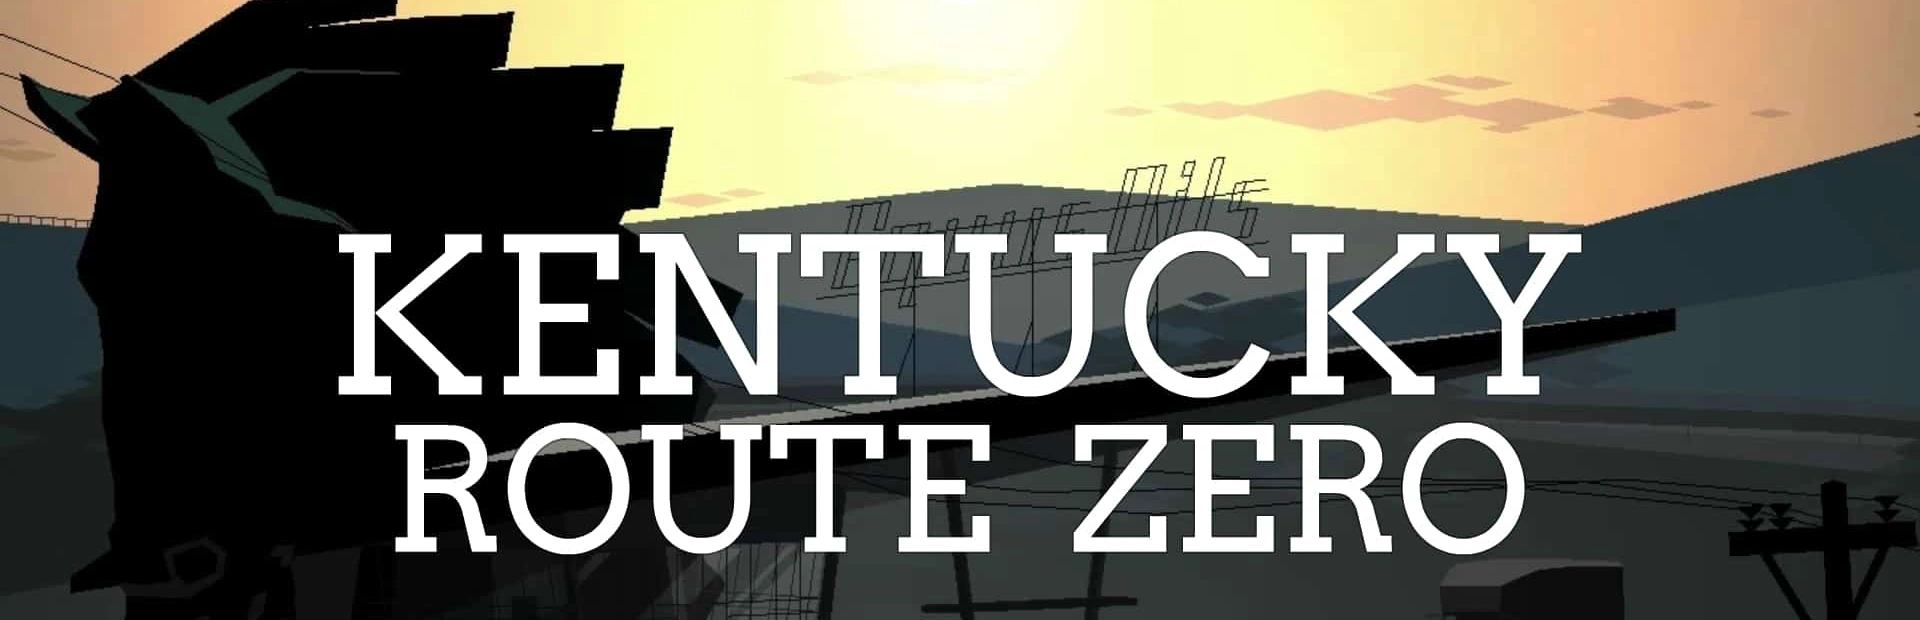 دانلود بازی kentucky route zero game برای کامپیوتر | گیمباتو